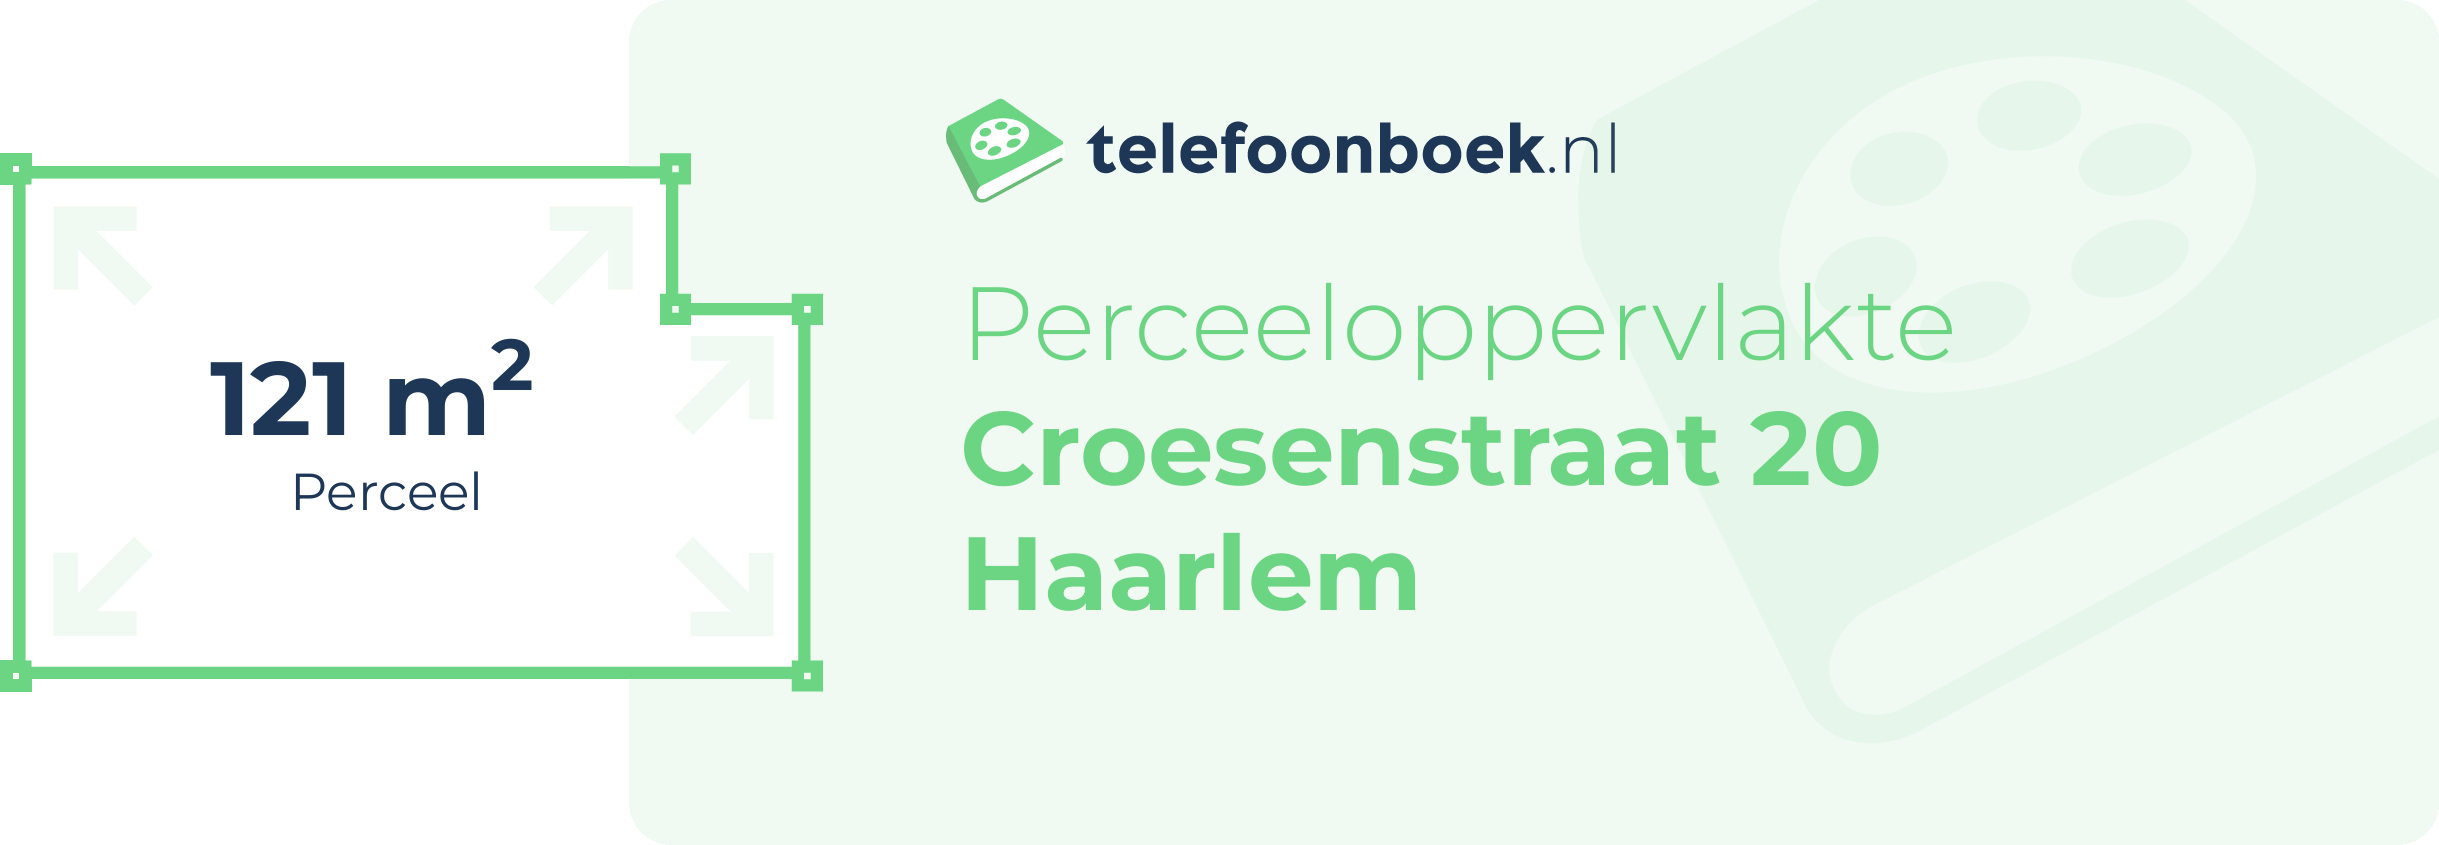 Perceeloppervlakte Croesenstraat 20 Haarlem